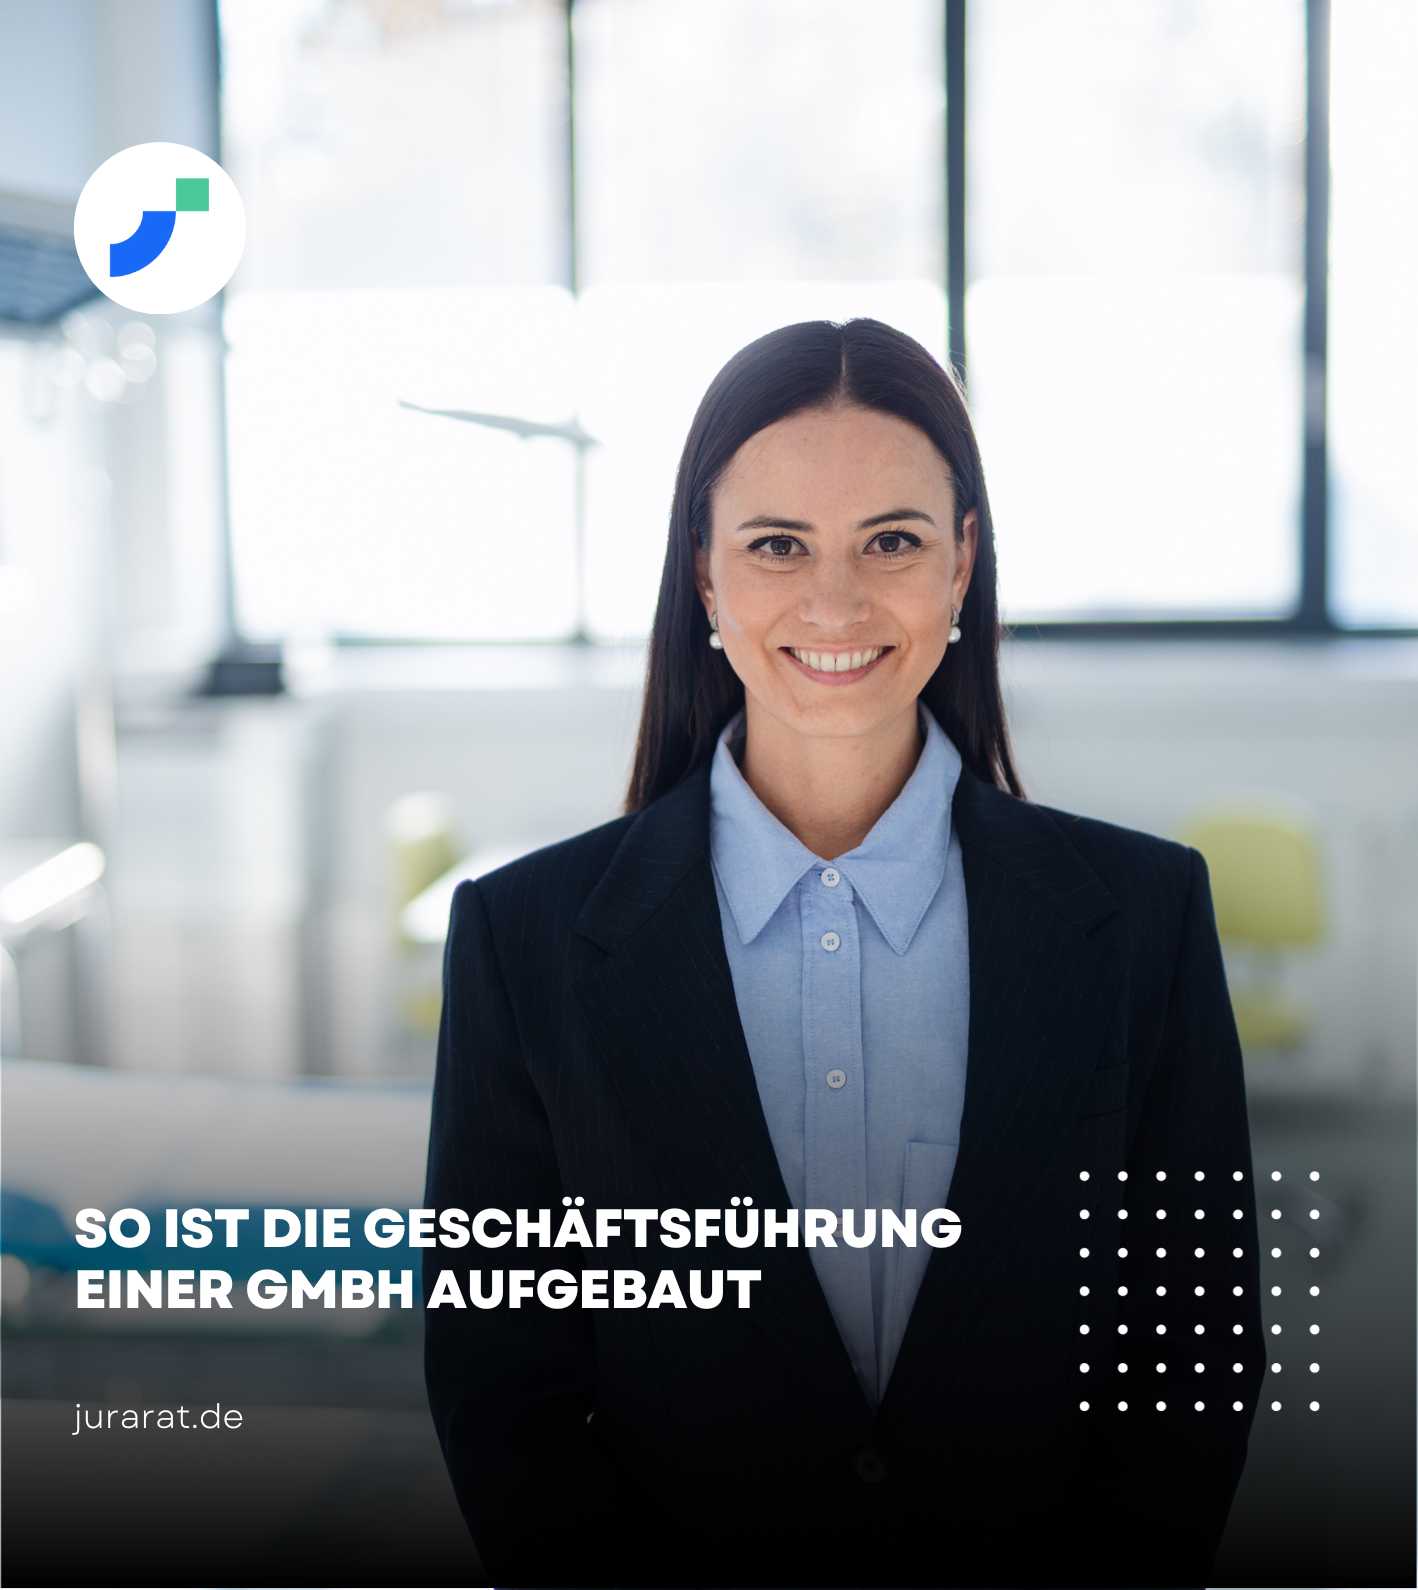 GmbH Geschäftsführung: Der GmbH Geschäftsführer ist der wichtigste Teil der Geschäftsführung laut GmbH-Gesetz!